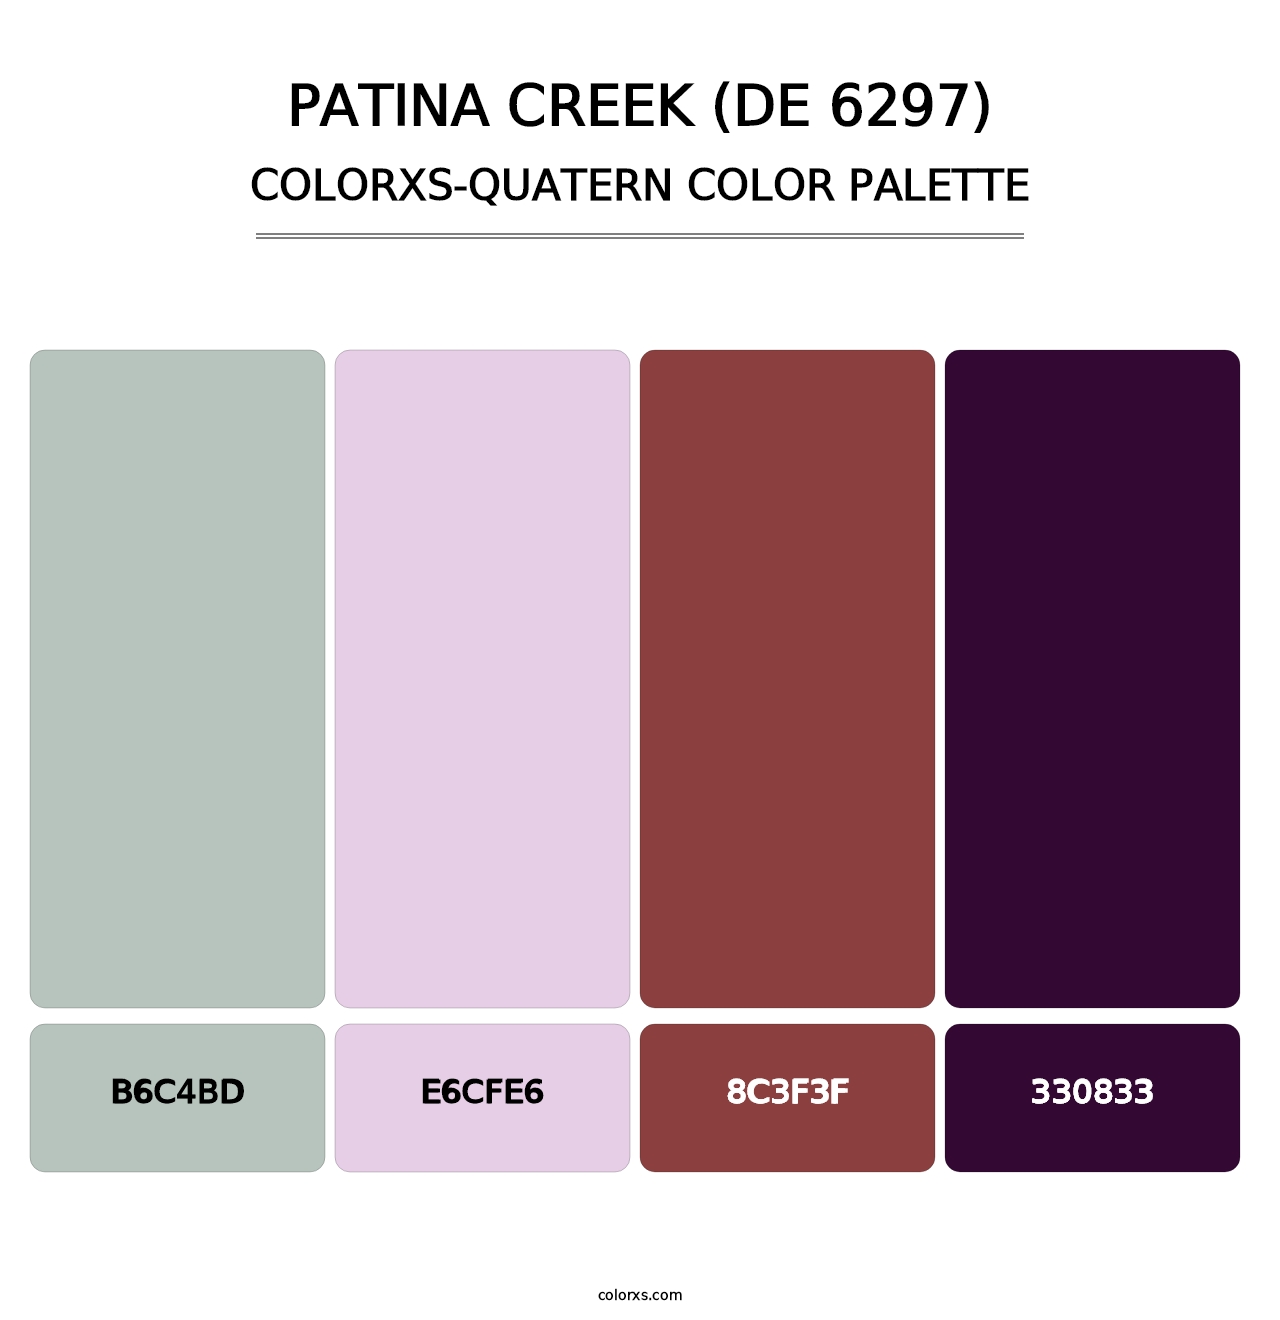 Patina Creek (DE 6297) - Colorxs Quatern Palette